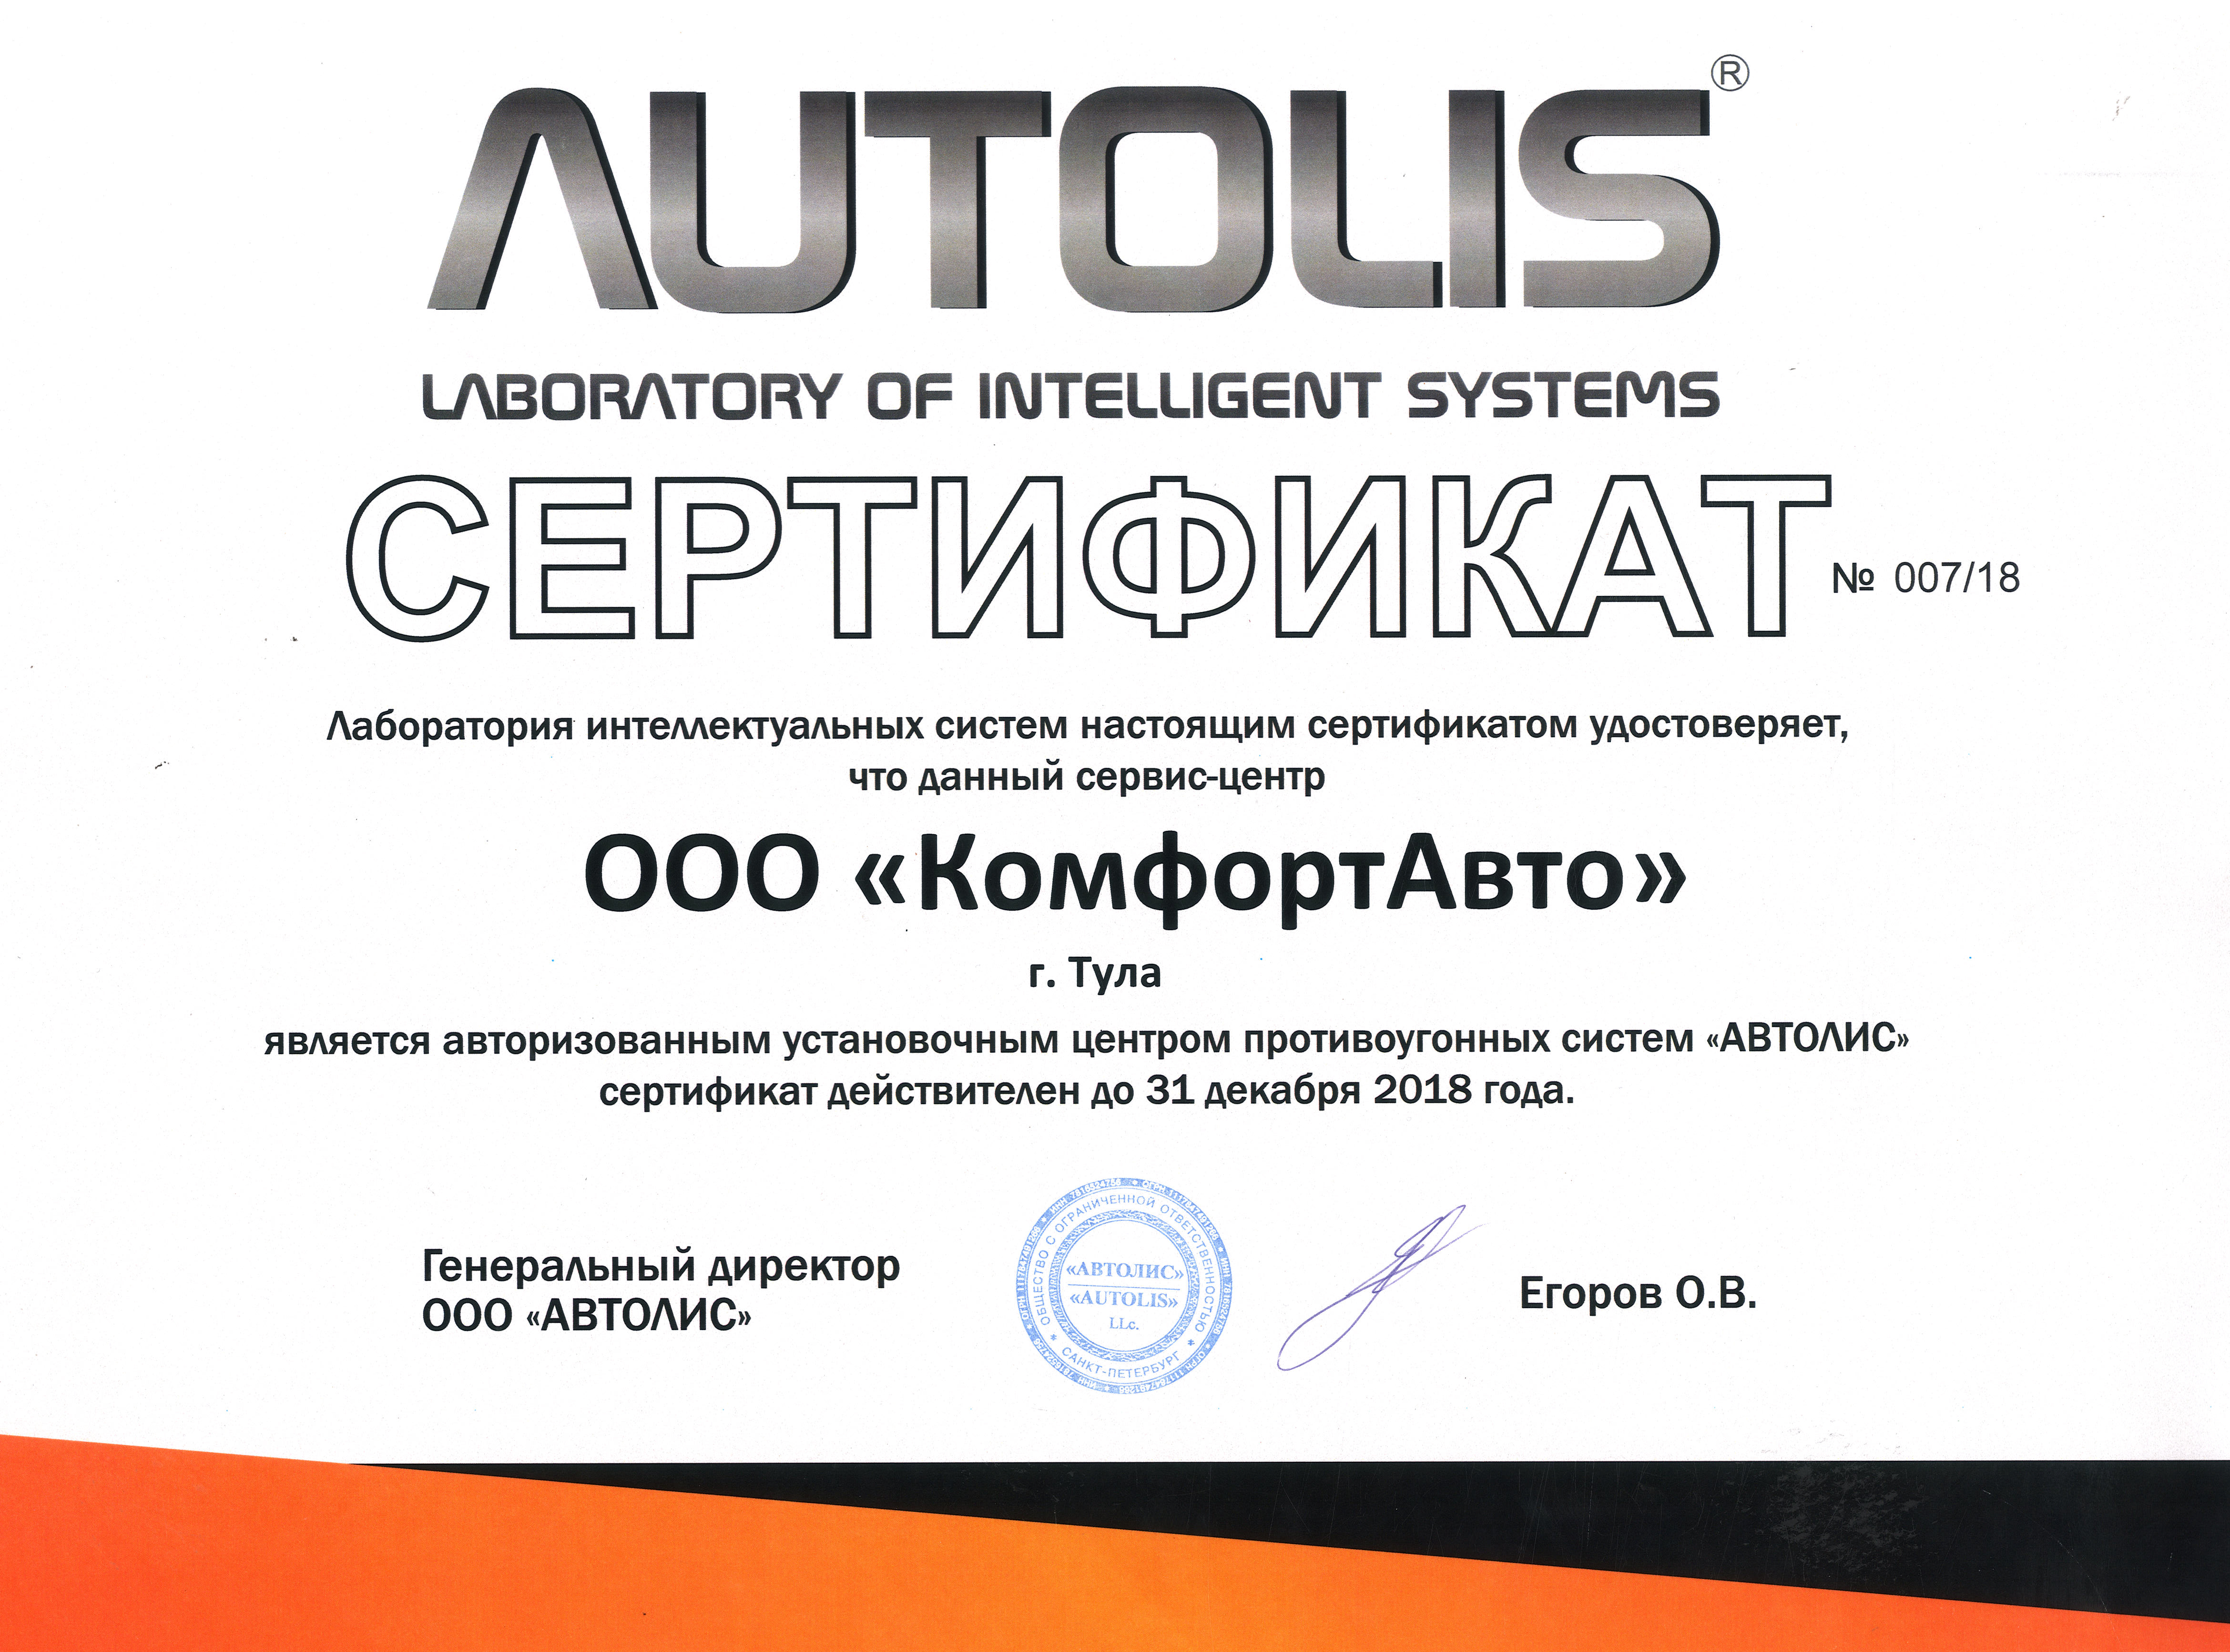 Теперь мы являемся авторизованным установочным центром противоугонных систем AUTOLIS  в Туле!